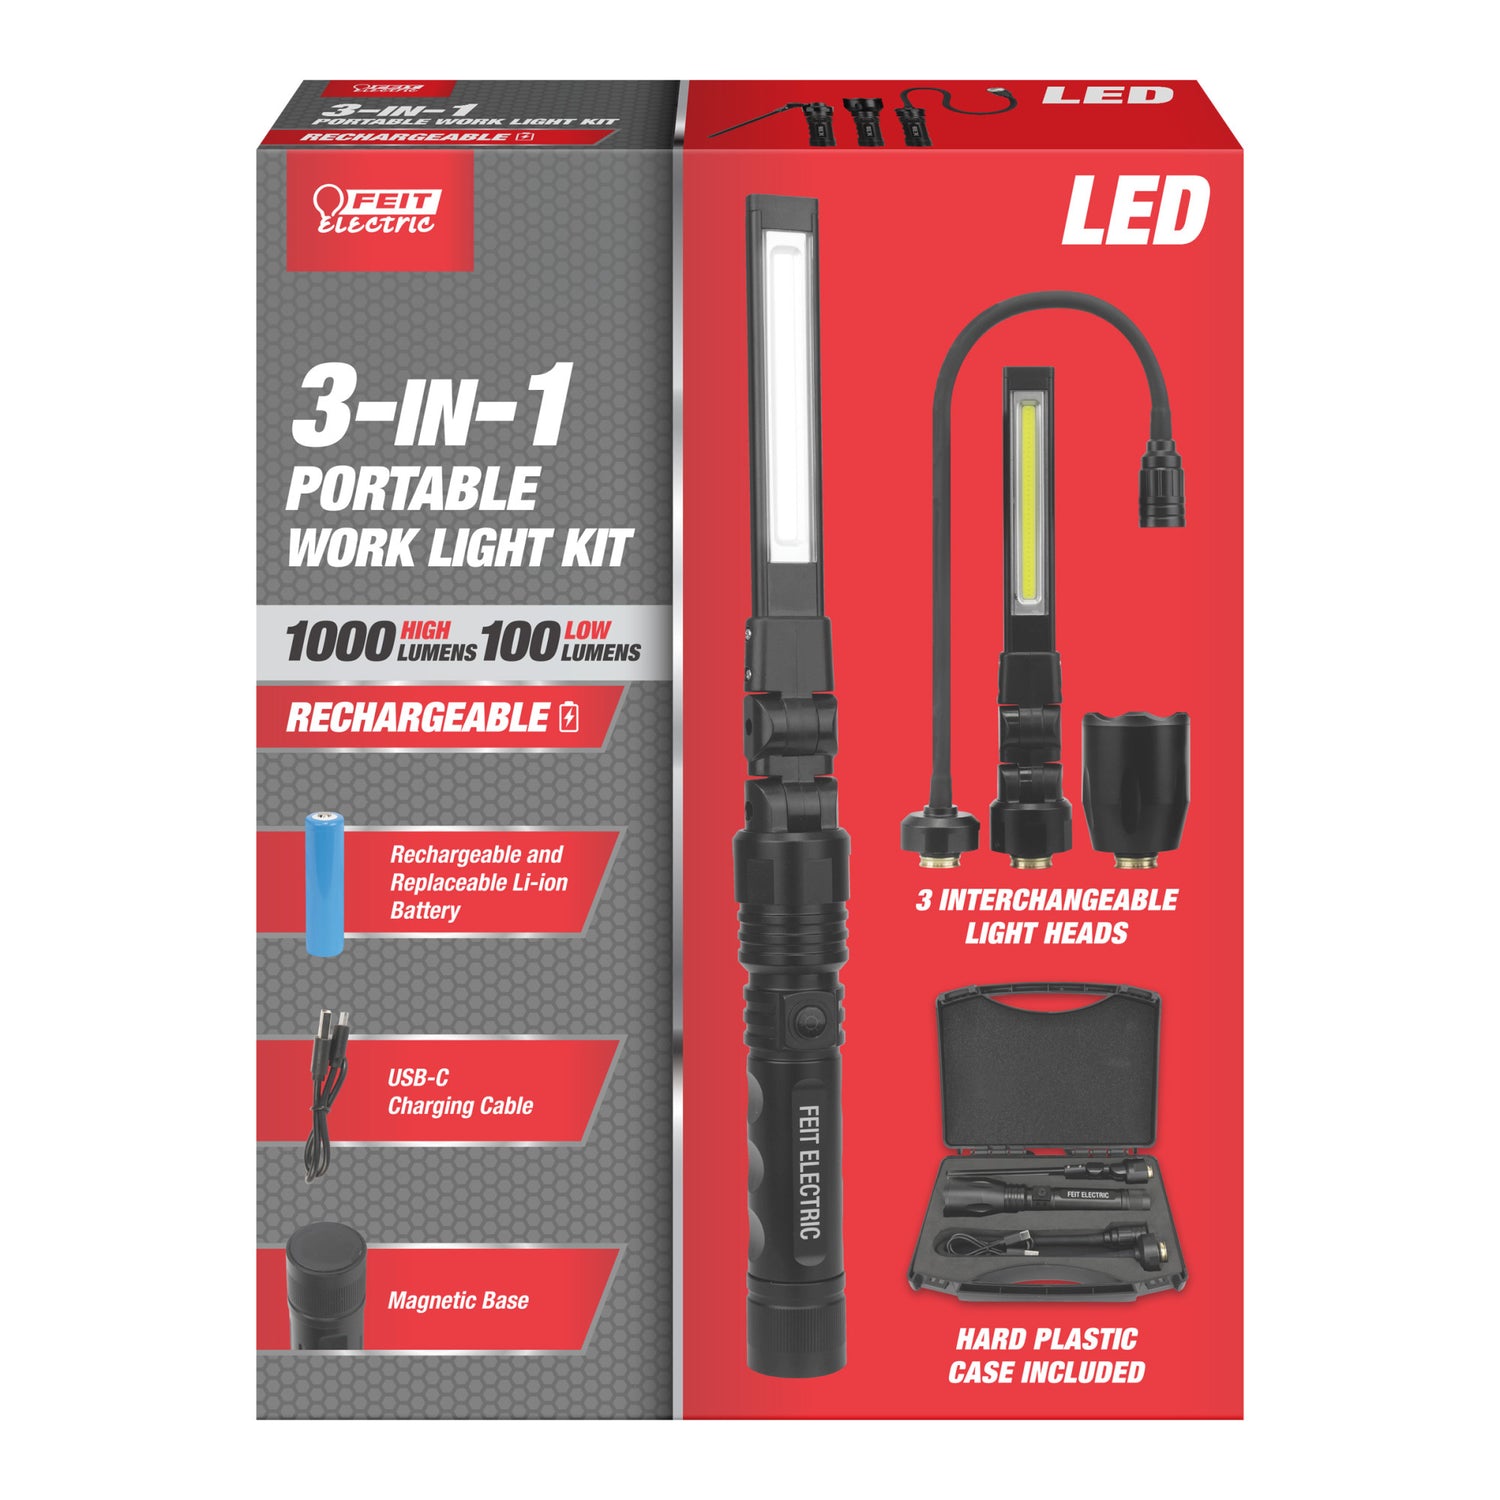 3-in-1 Portable LED Work Light Kit